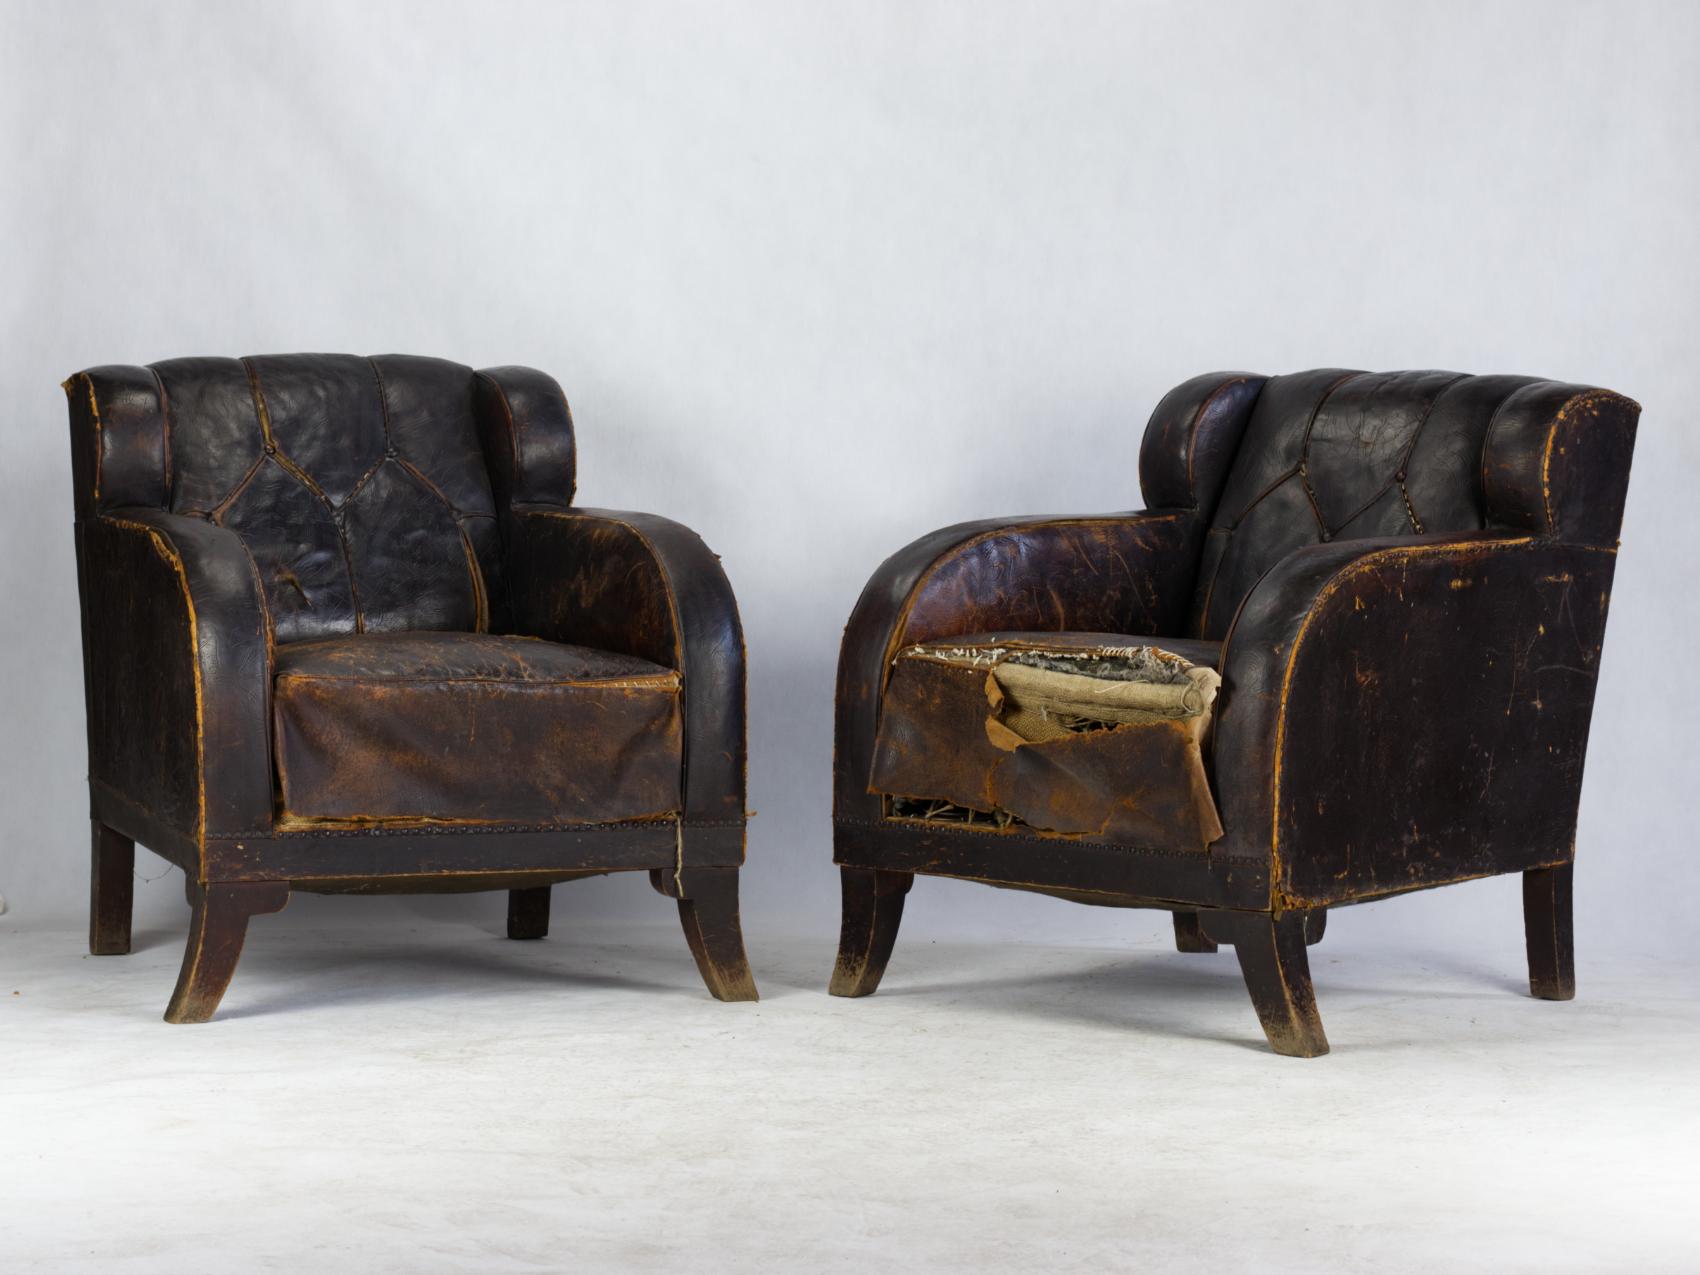 Une paire de rares fauteuils club en cuir Art Nouveau fabriqués au début du vingtième siècle, probablement en Autriche. Les chaises sont dans leur état d'origine et devront être restaurées.
 